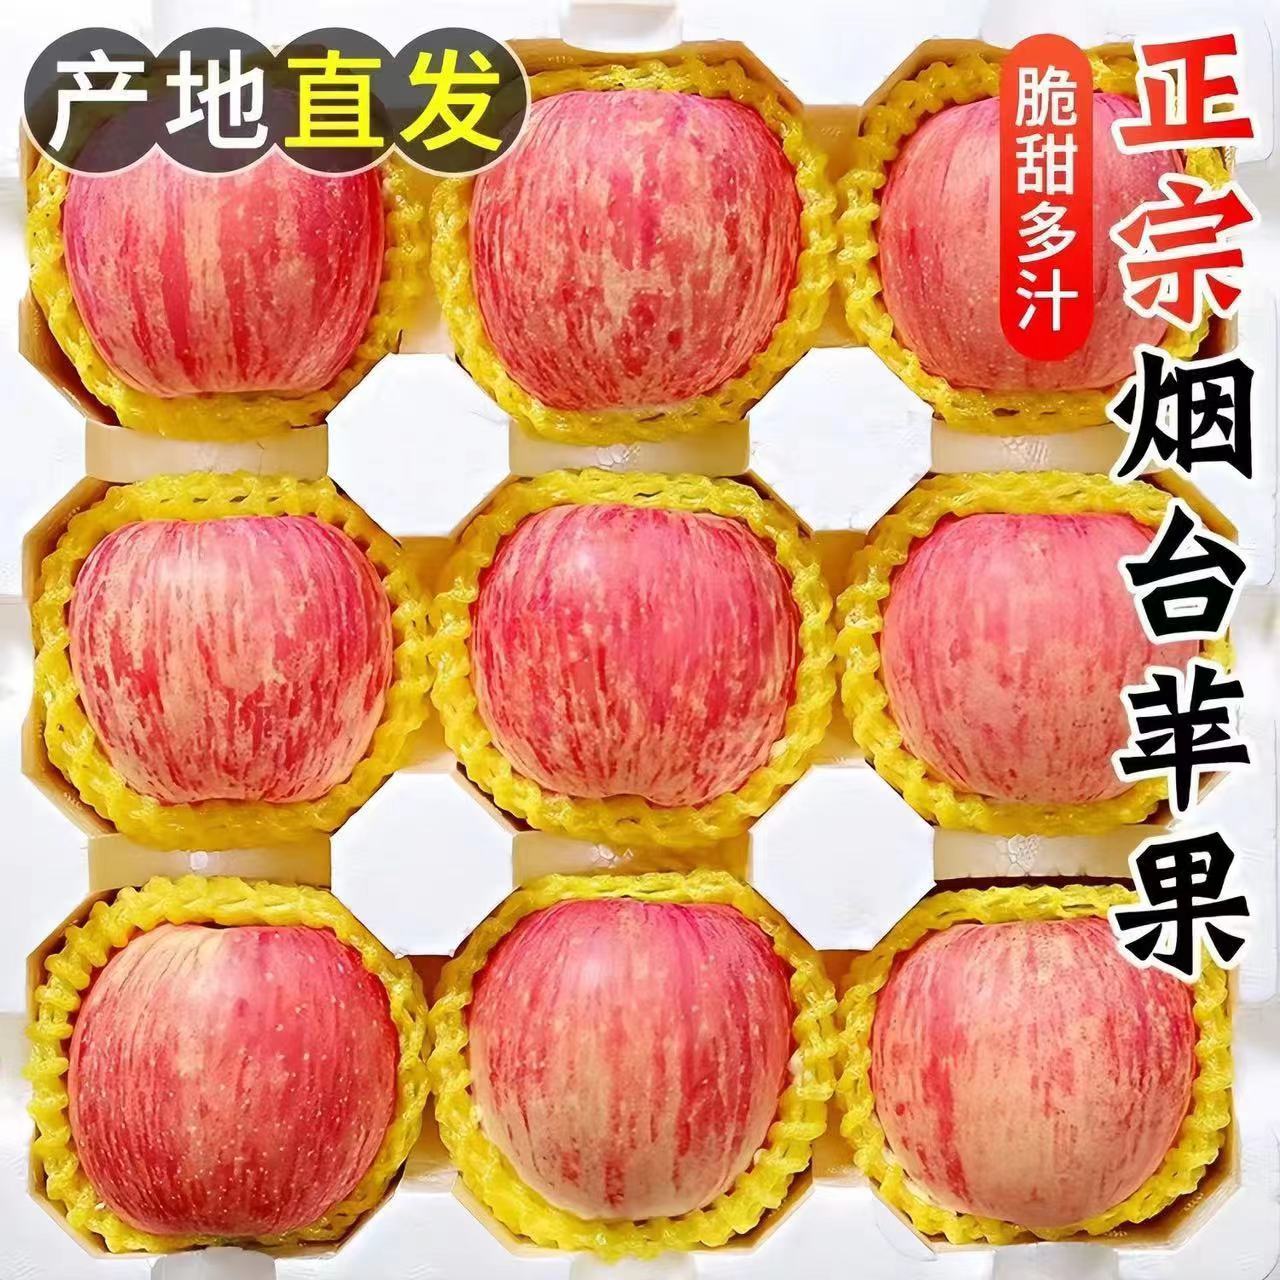 不打蜡自然熟新鲜山东烟台栖霞红富士脆甜苹果水果10苹果整箱包邮